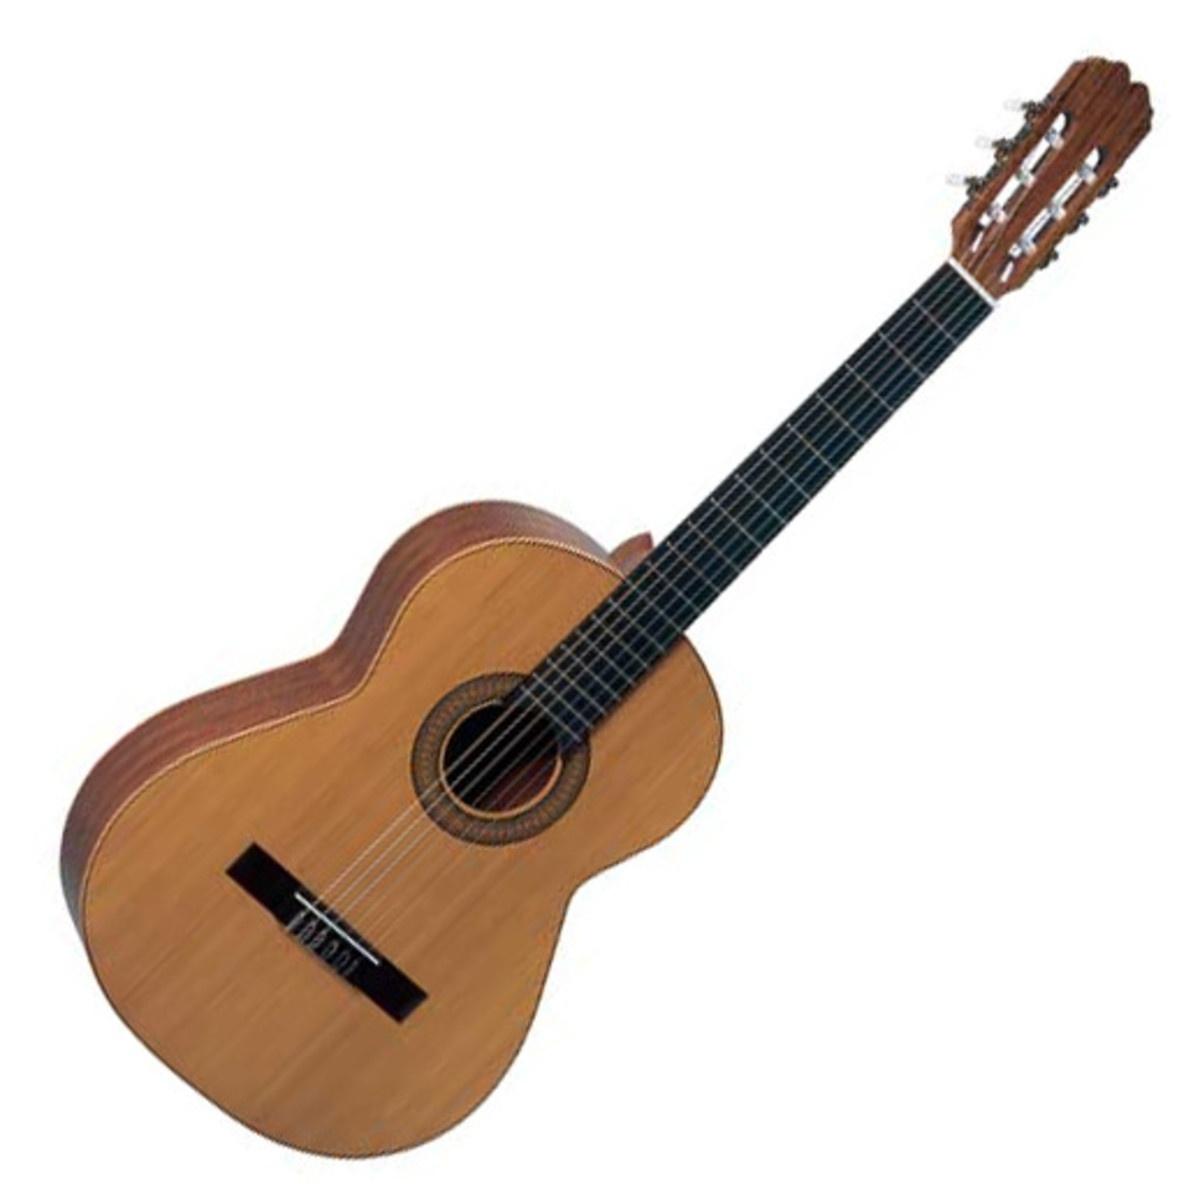 Admira Sevilla chitarra classica spagnola